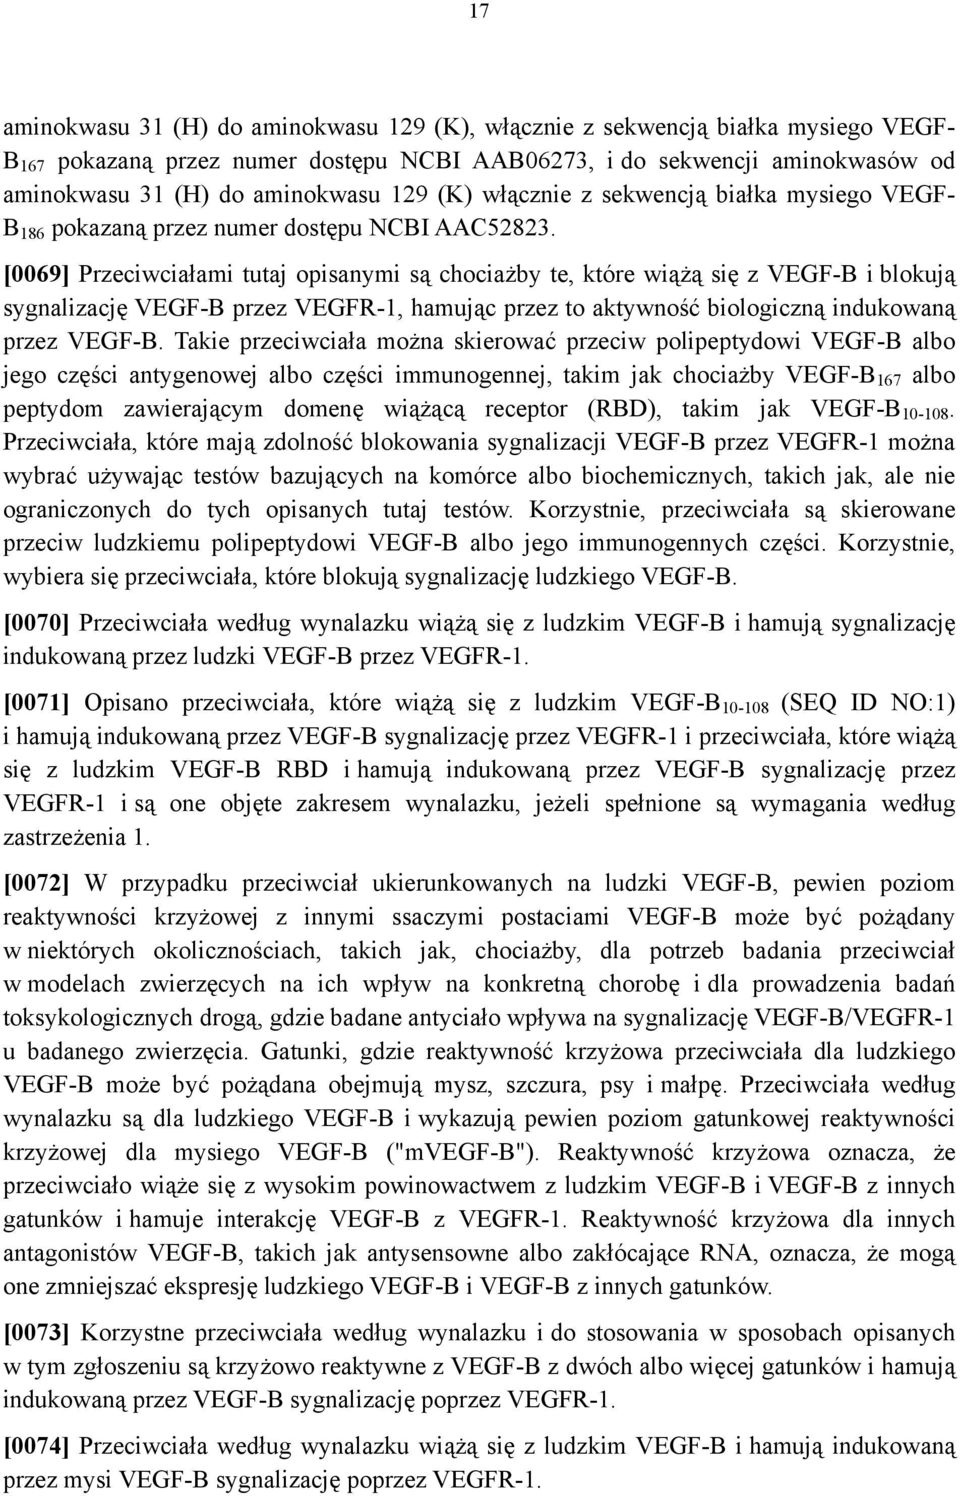 [0069] Przeciwciałami tutaj opisanymi są chociażby te, które wiążą się z VEGF-B i blokują sygnalizację VEGF-B przez VEGFR-1, hamując przez to aktywność biologiczną indukowaną przez VEGF-B.